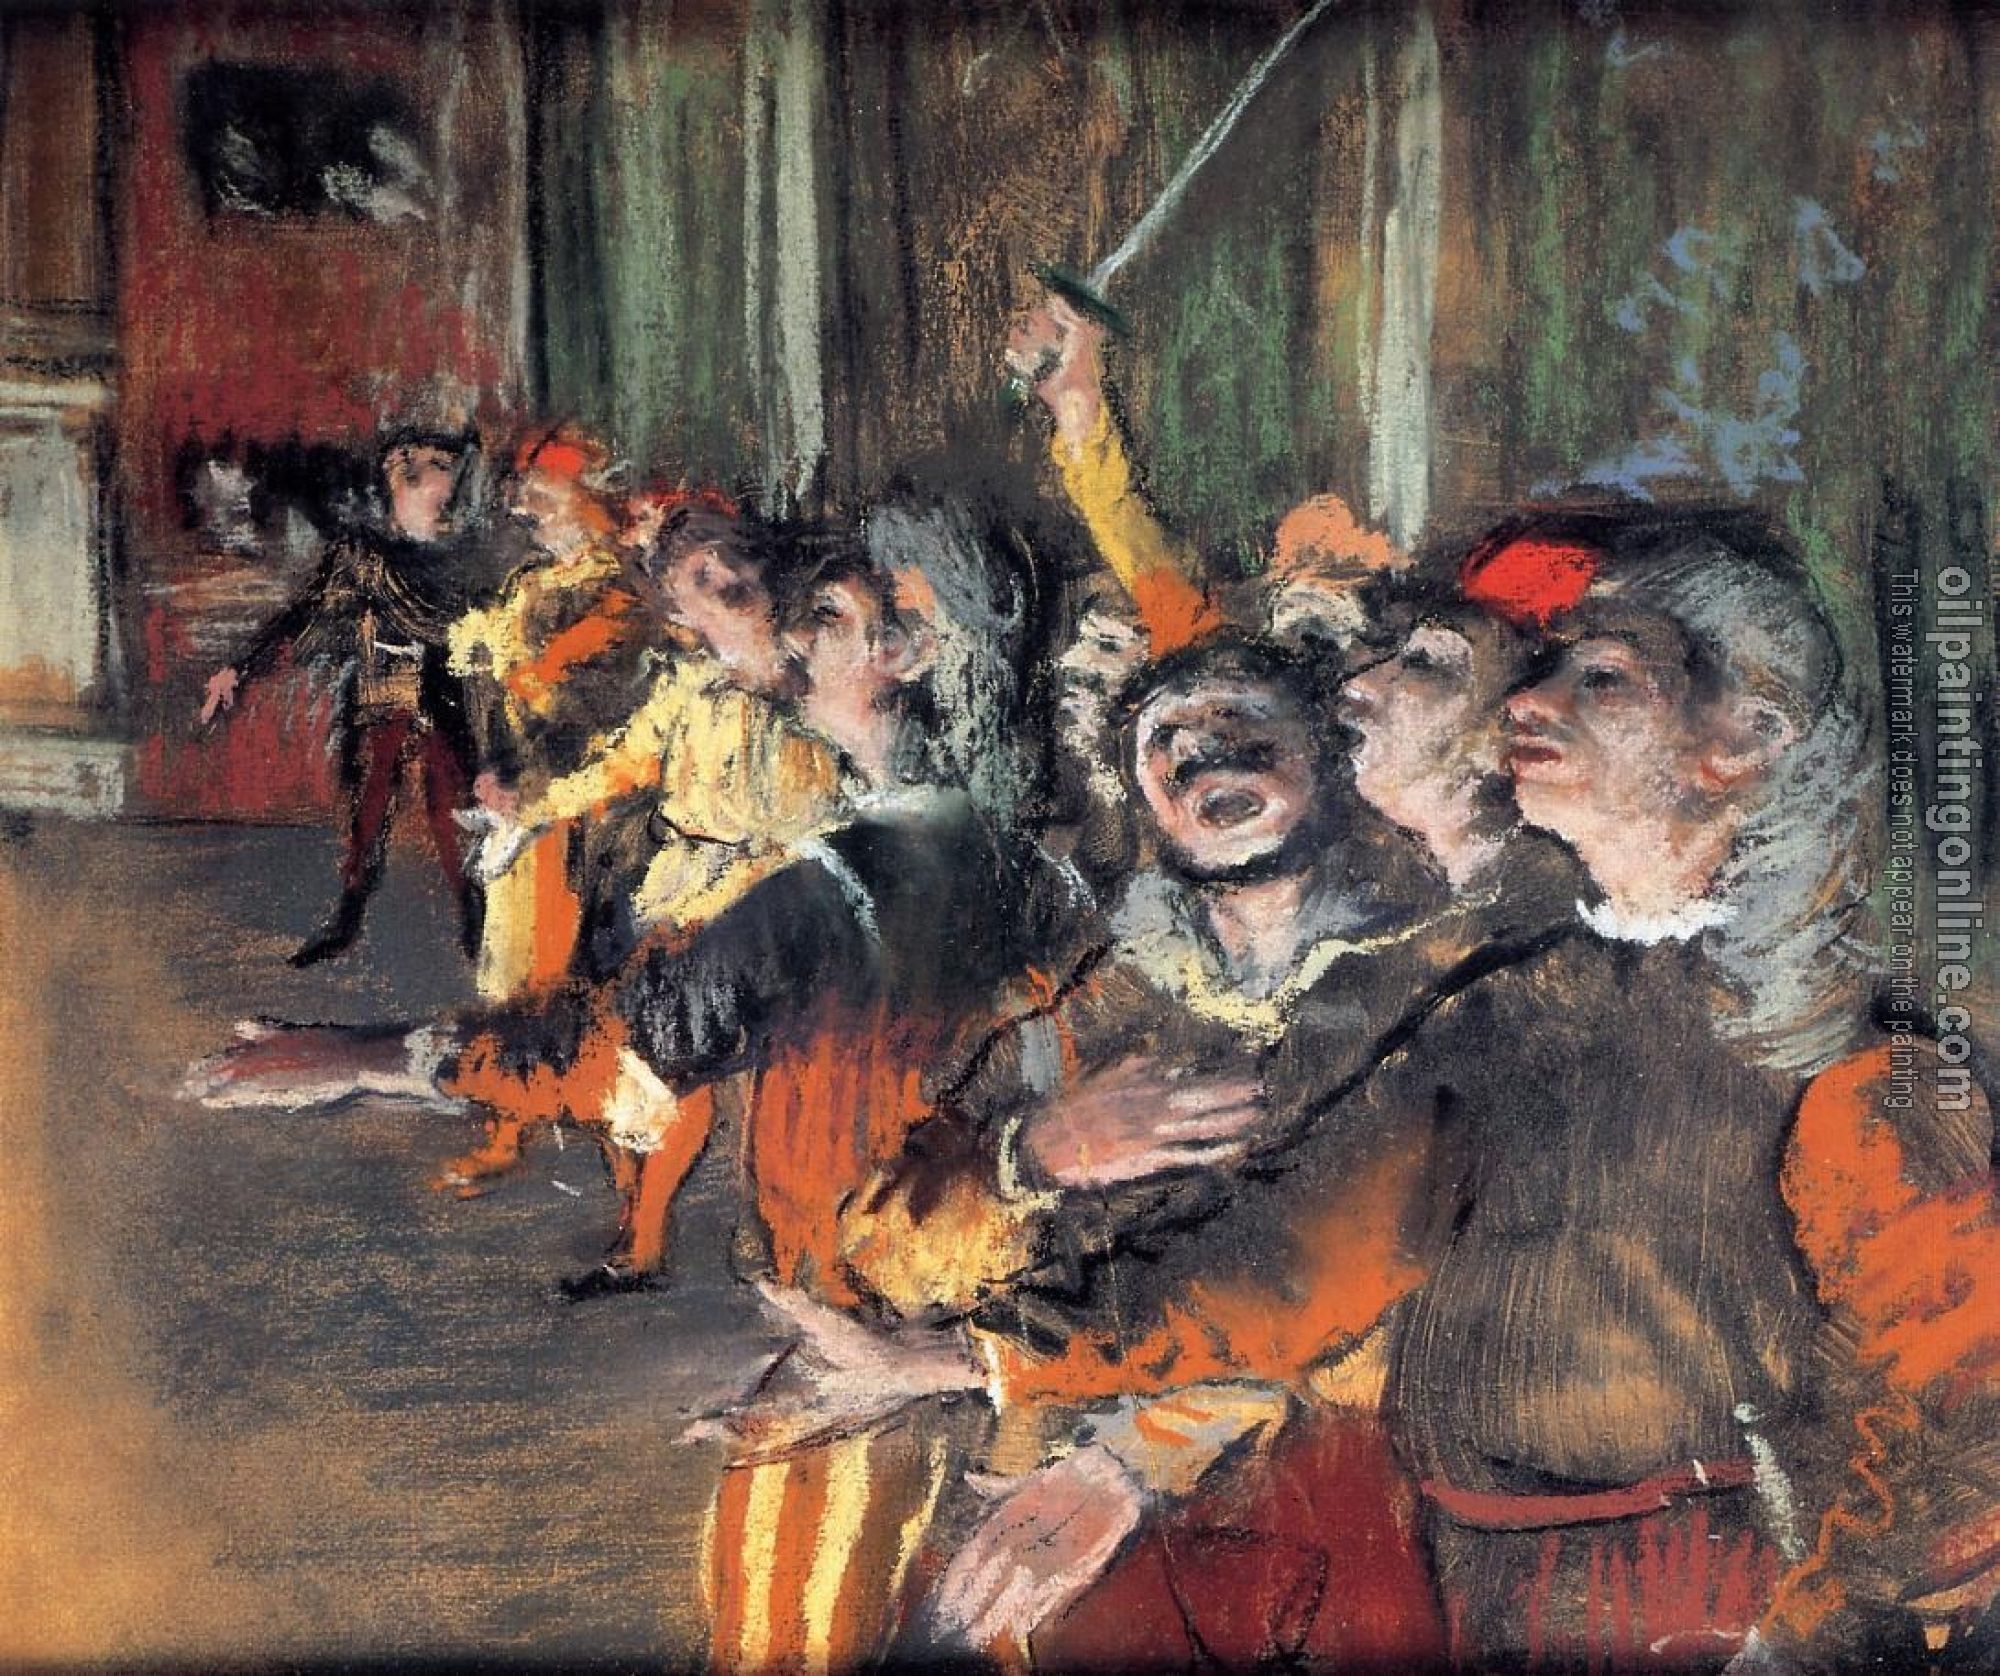 Degas, Edgar - The Chorus